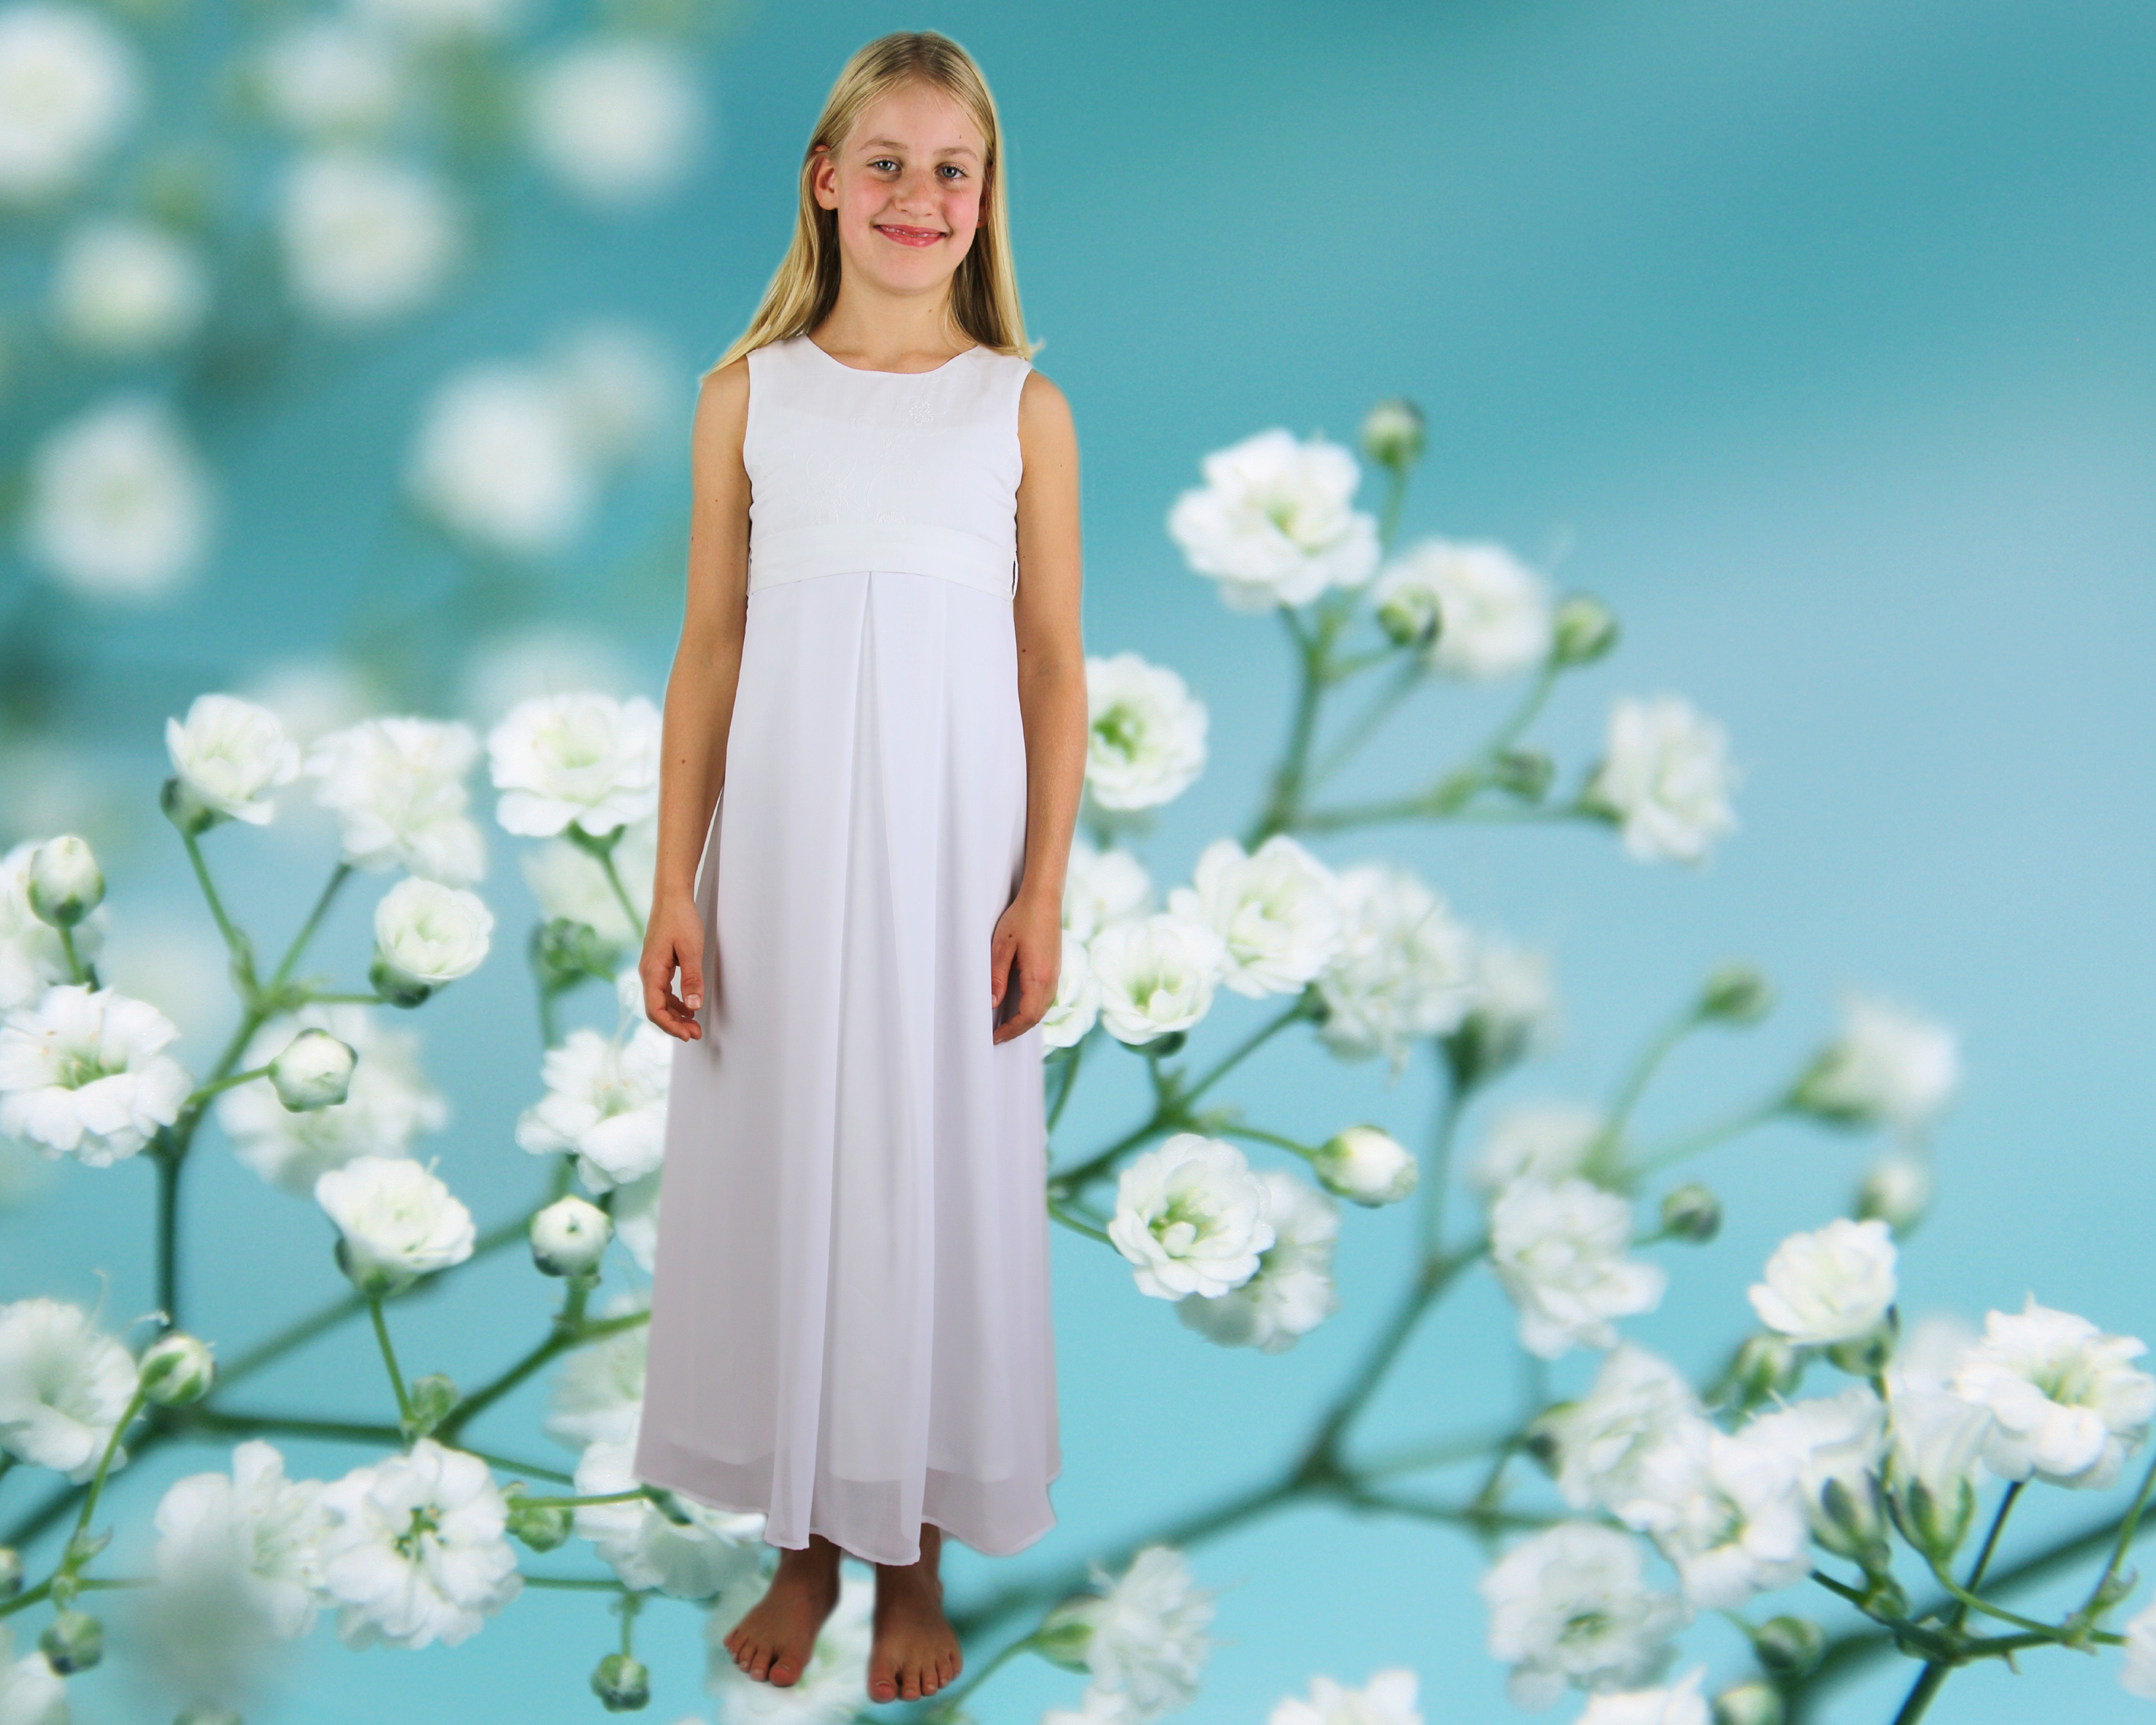 Kommunionskleid in reinweiß für zarte Mädchen